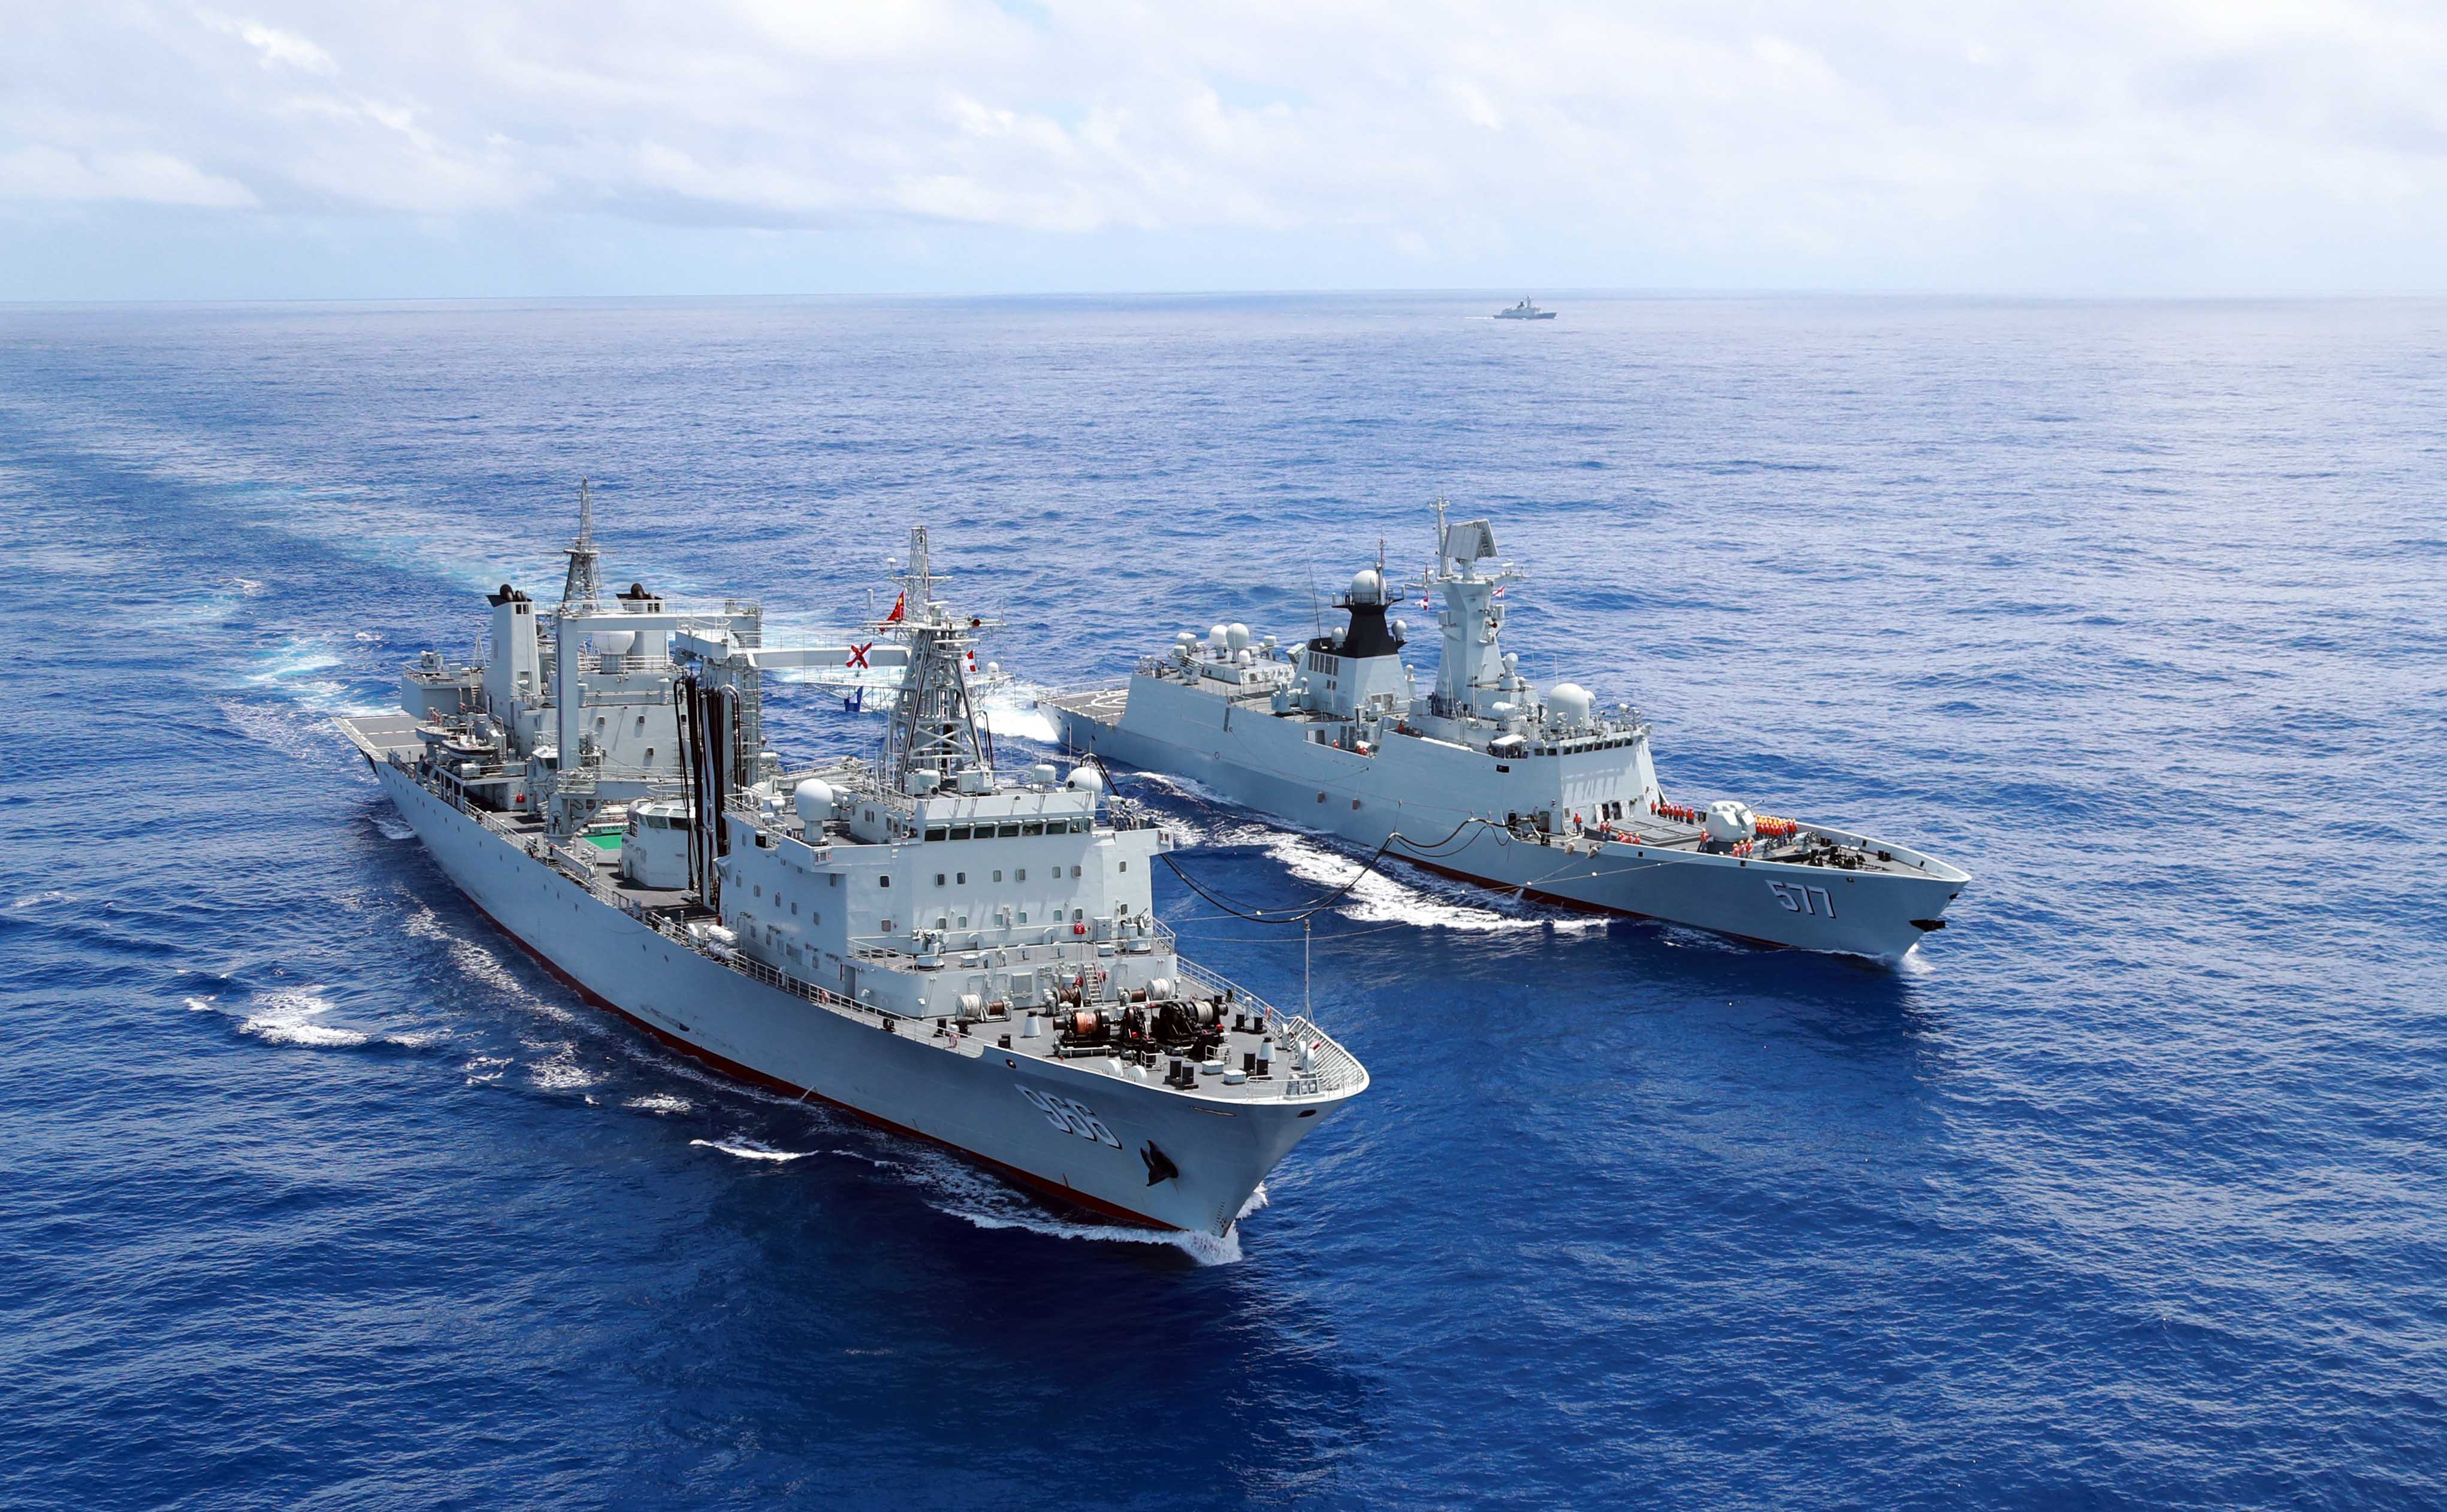 Ни один флот в мире не обладает уникальными российскими технологиями дозаправки боевых кораблей в море из зада в зад … Вот и китайские корабли (судно обеспечения  Gaoyouhu, б/н  966 - слева, фрегат УРО Huanggang, б/н  577 - справа) дозаправляются «по-американски», борт-борт, и с дымом из высокой трубы у них что-то не то, фото сделано 6 апреля 2017 года в Аденском заливе